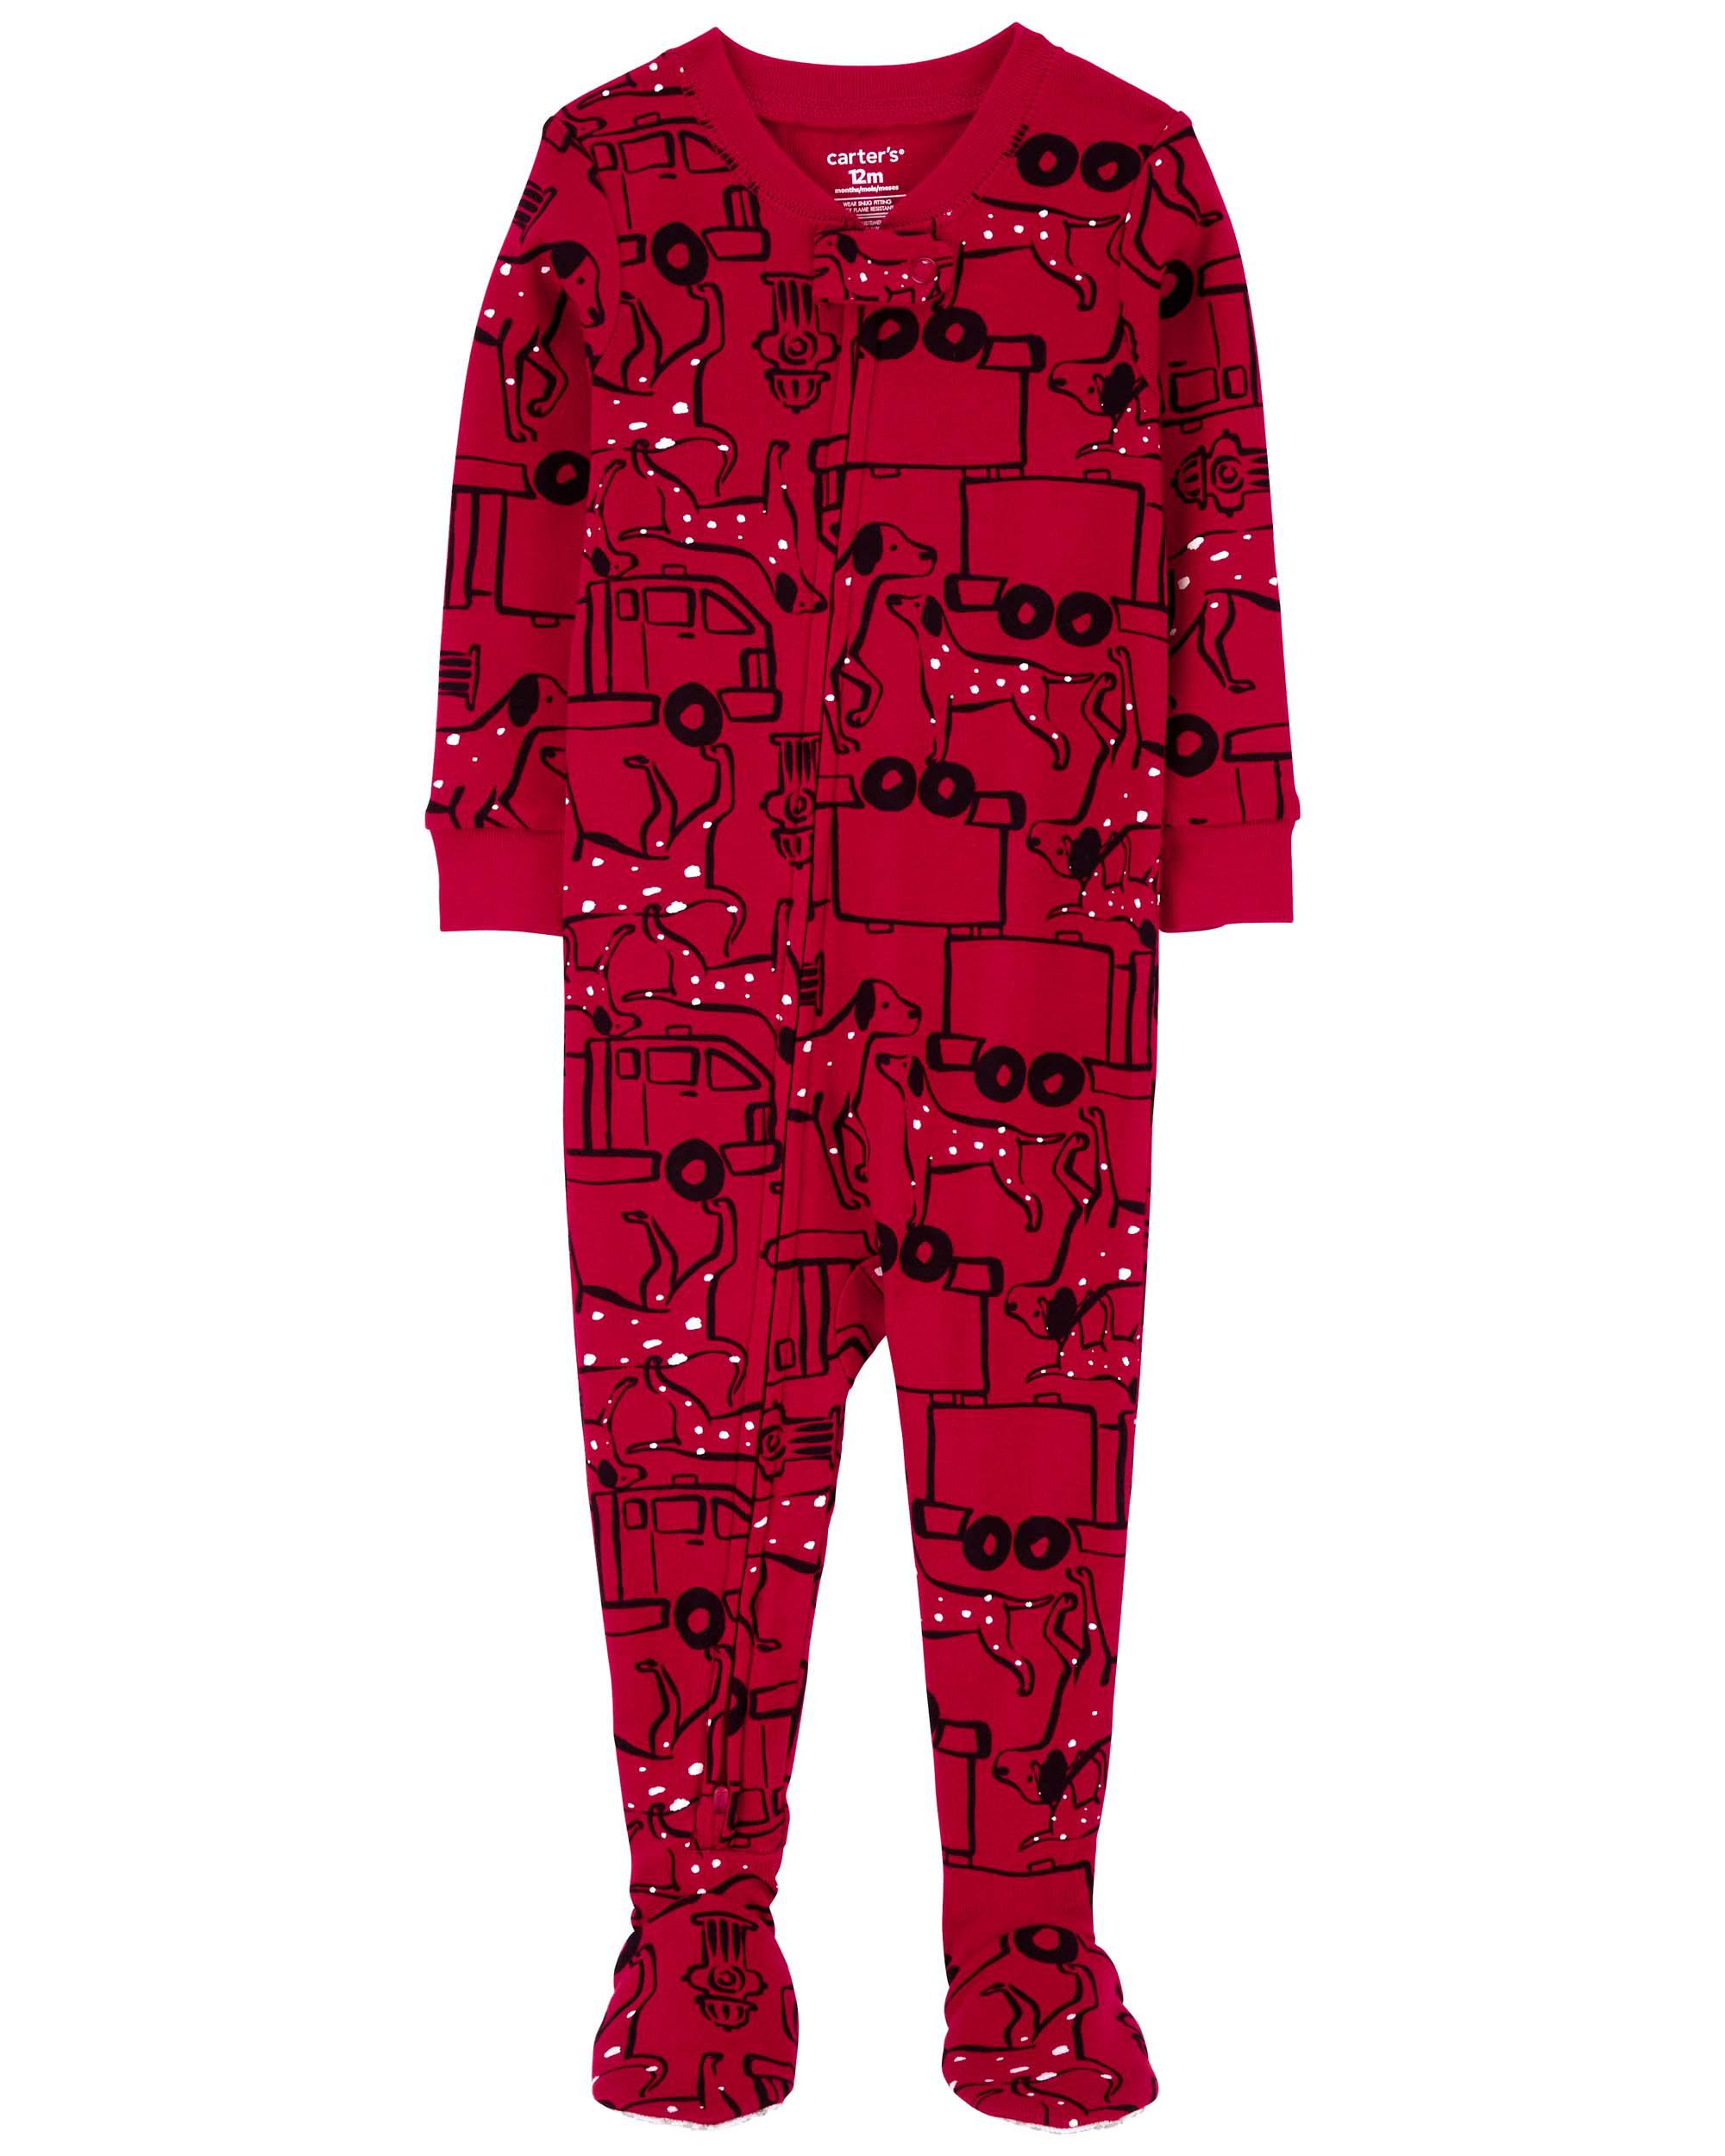 Baby 1-Piece 100% Snug Fit Cotton Footie Pyjamas